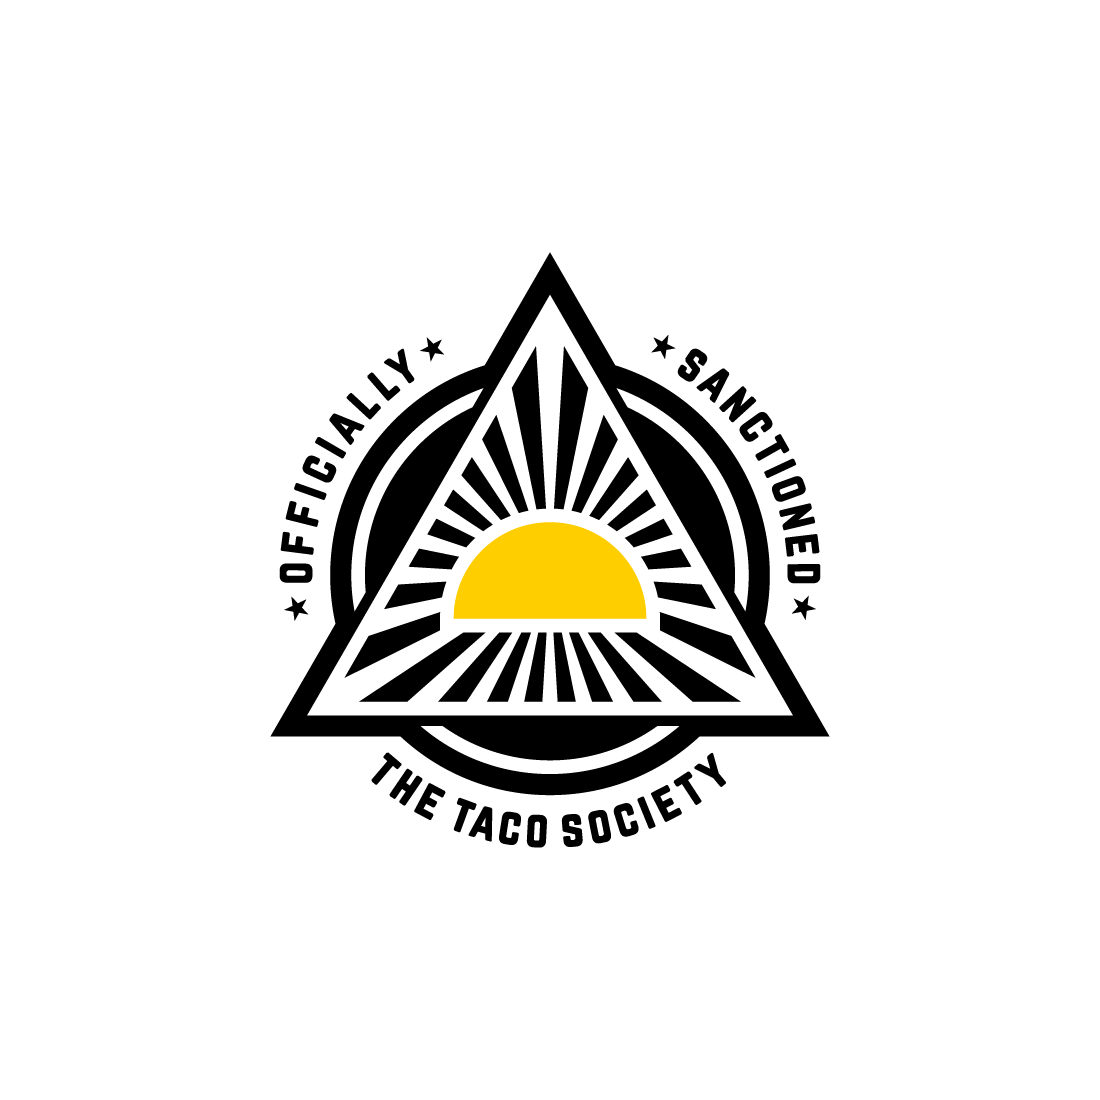 The Taco Society